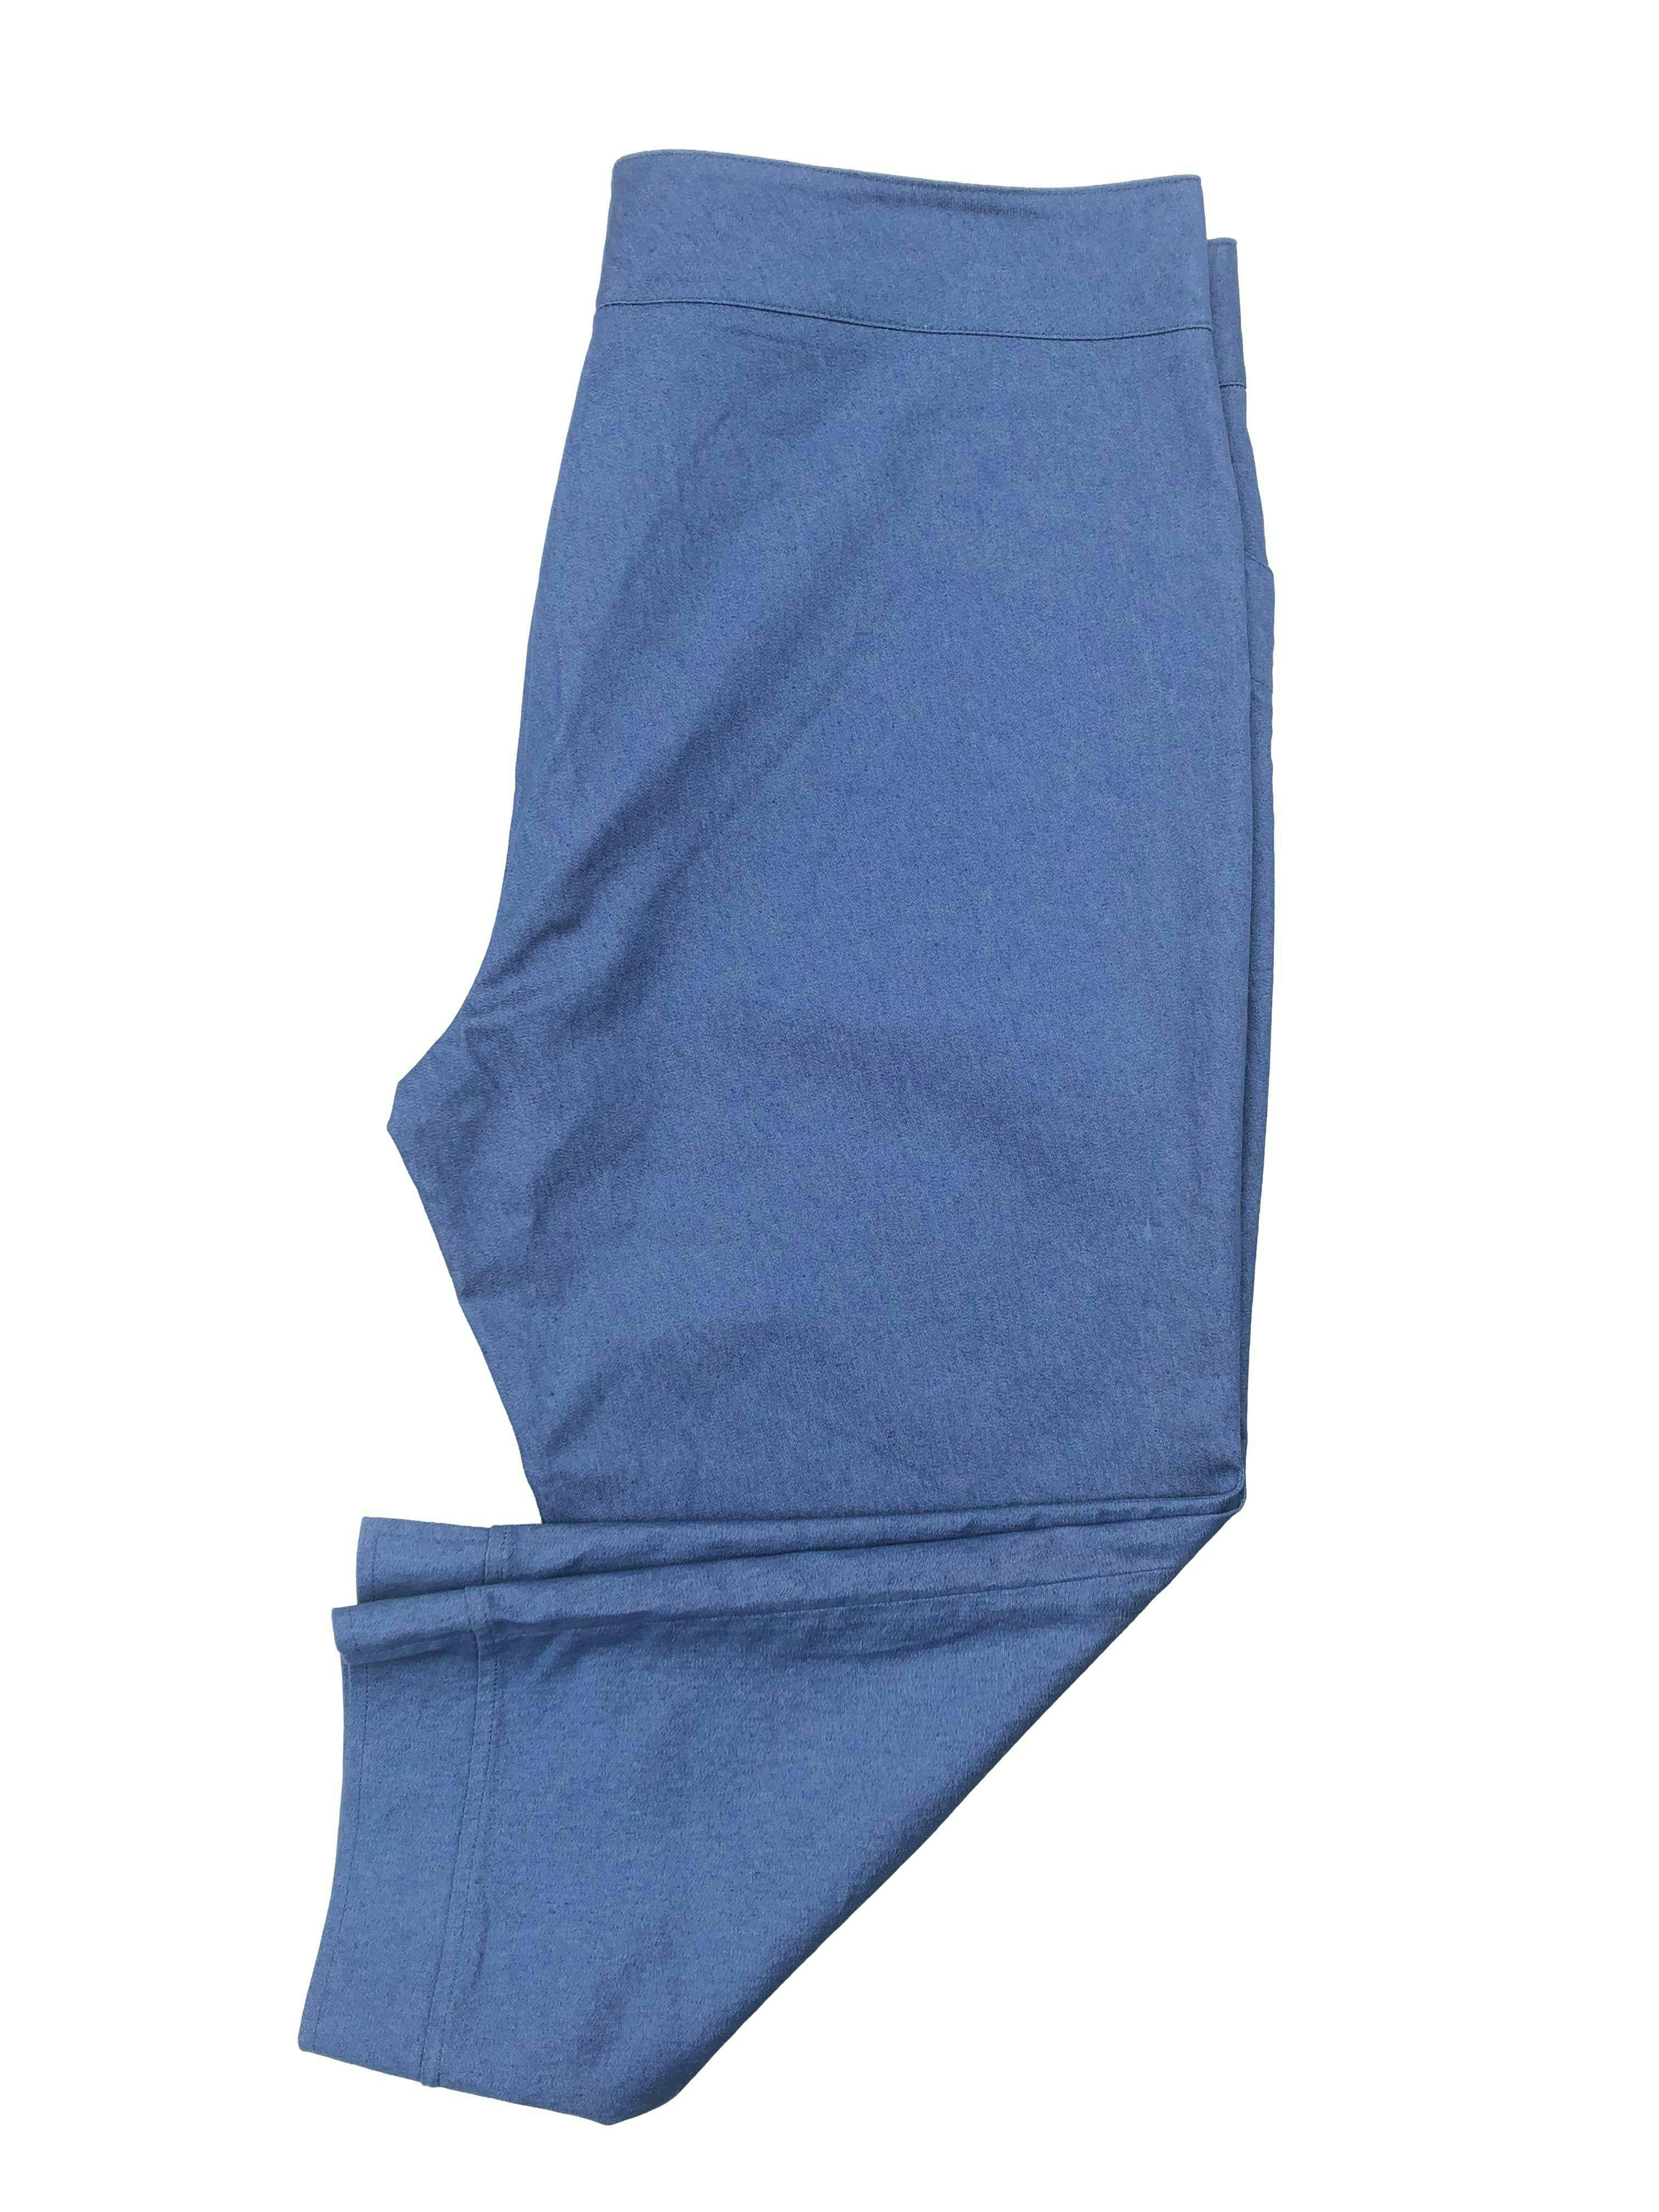 Pantalón pescador azul, tela tipo denim con bolsillos. Cintura 98cm, Tiro 26cm, Largo 81cm.